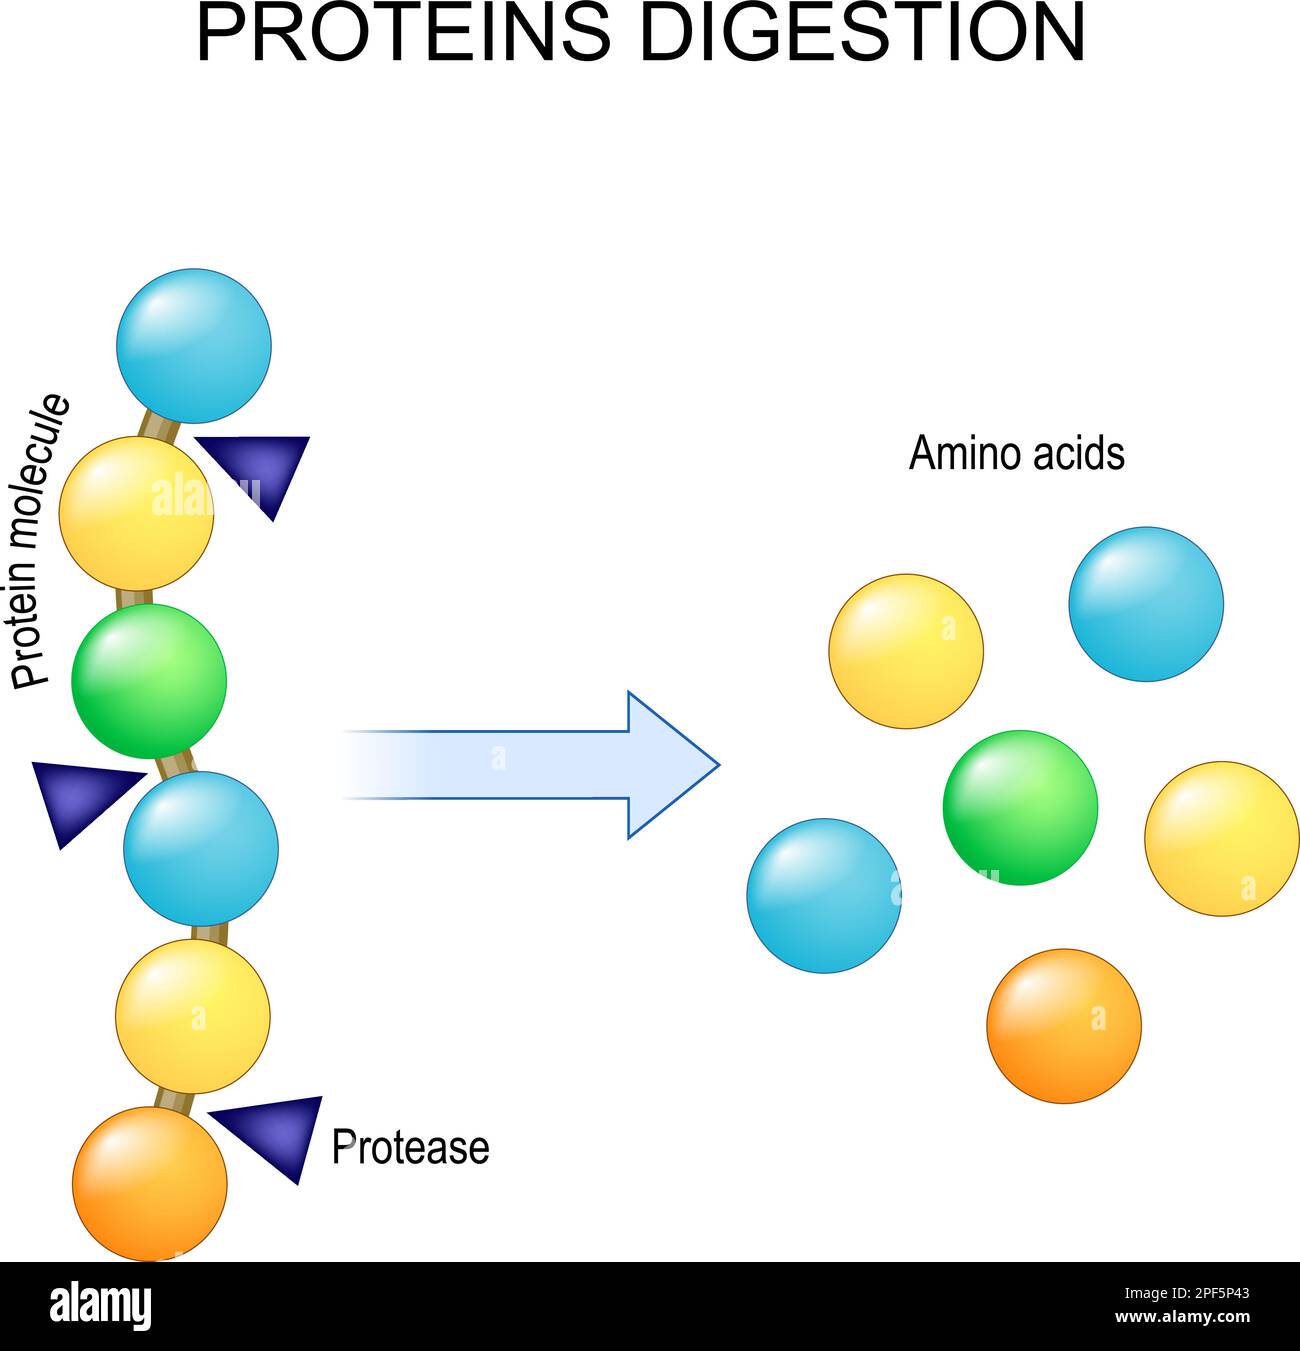 Digestion des protéines. Enzymes les protéases sont la digestion décompose la protéine en acides aminés uniques, qui sont absorbés dans le sang. Illustration vectorielle Illustration de Vecteur